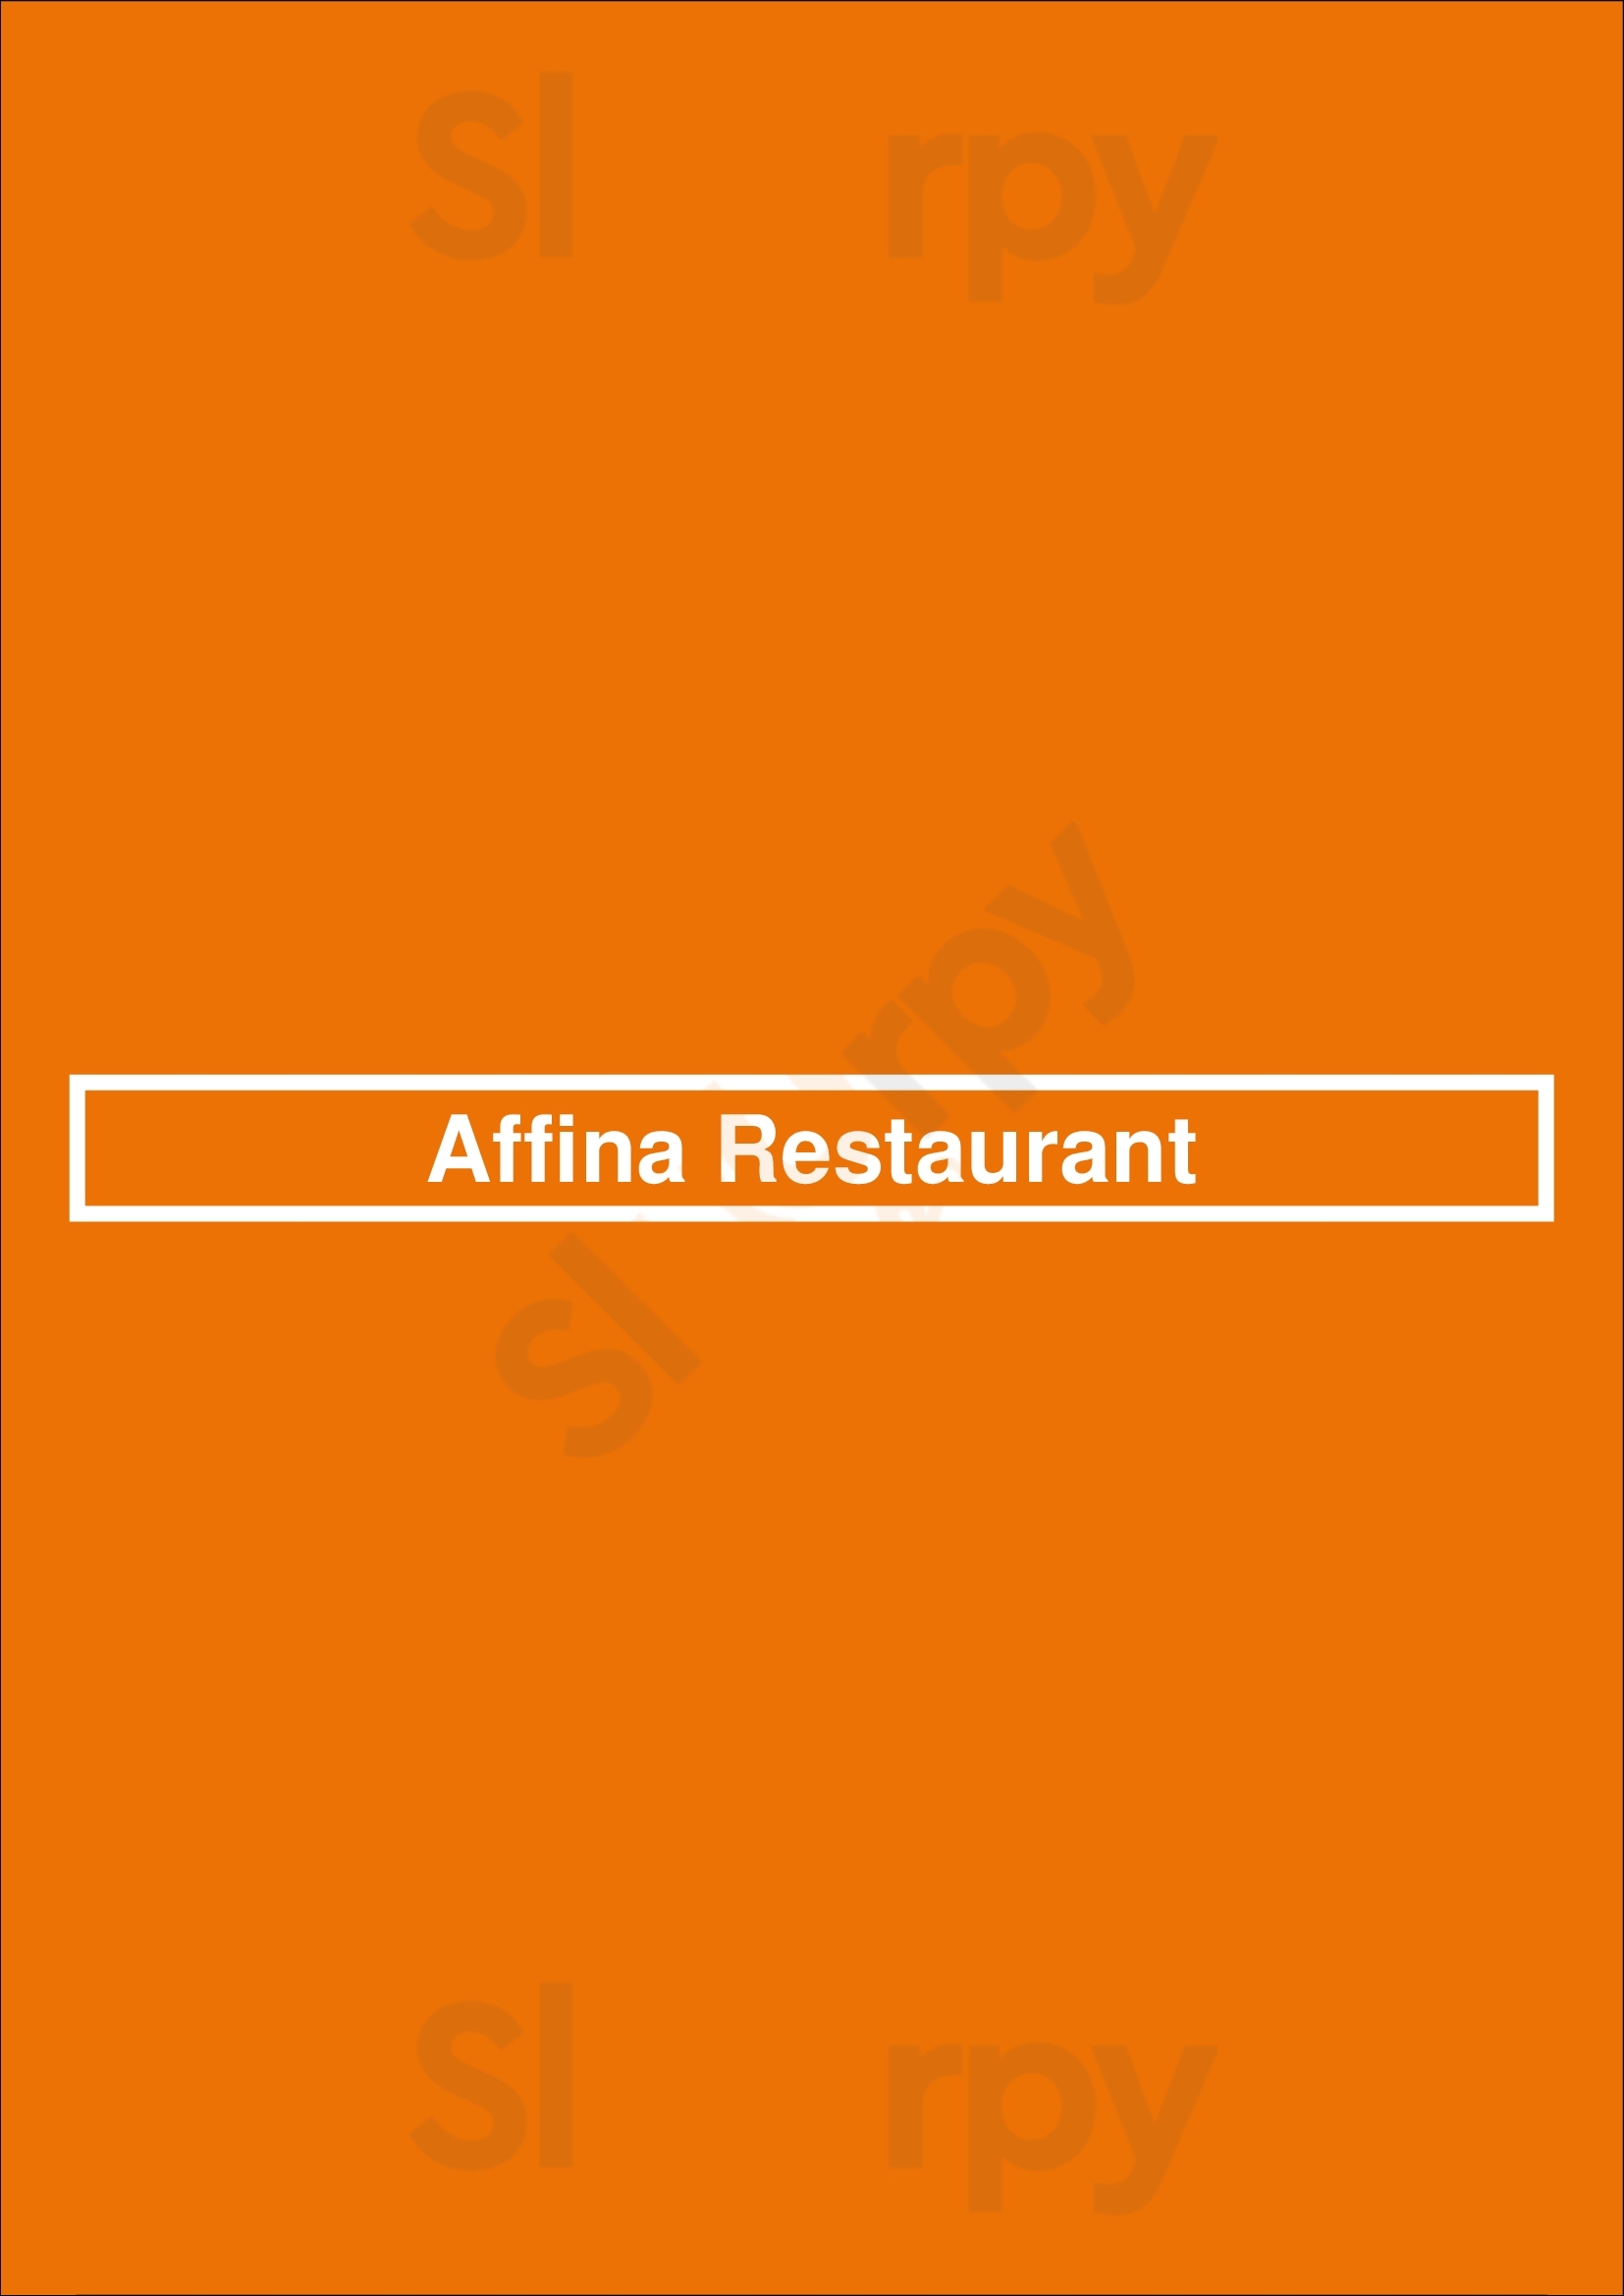 Affina Restaurant Carmel Menu - 1